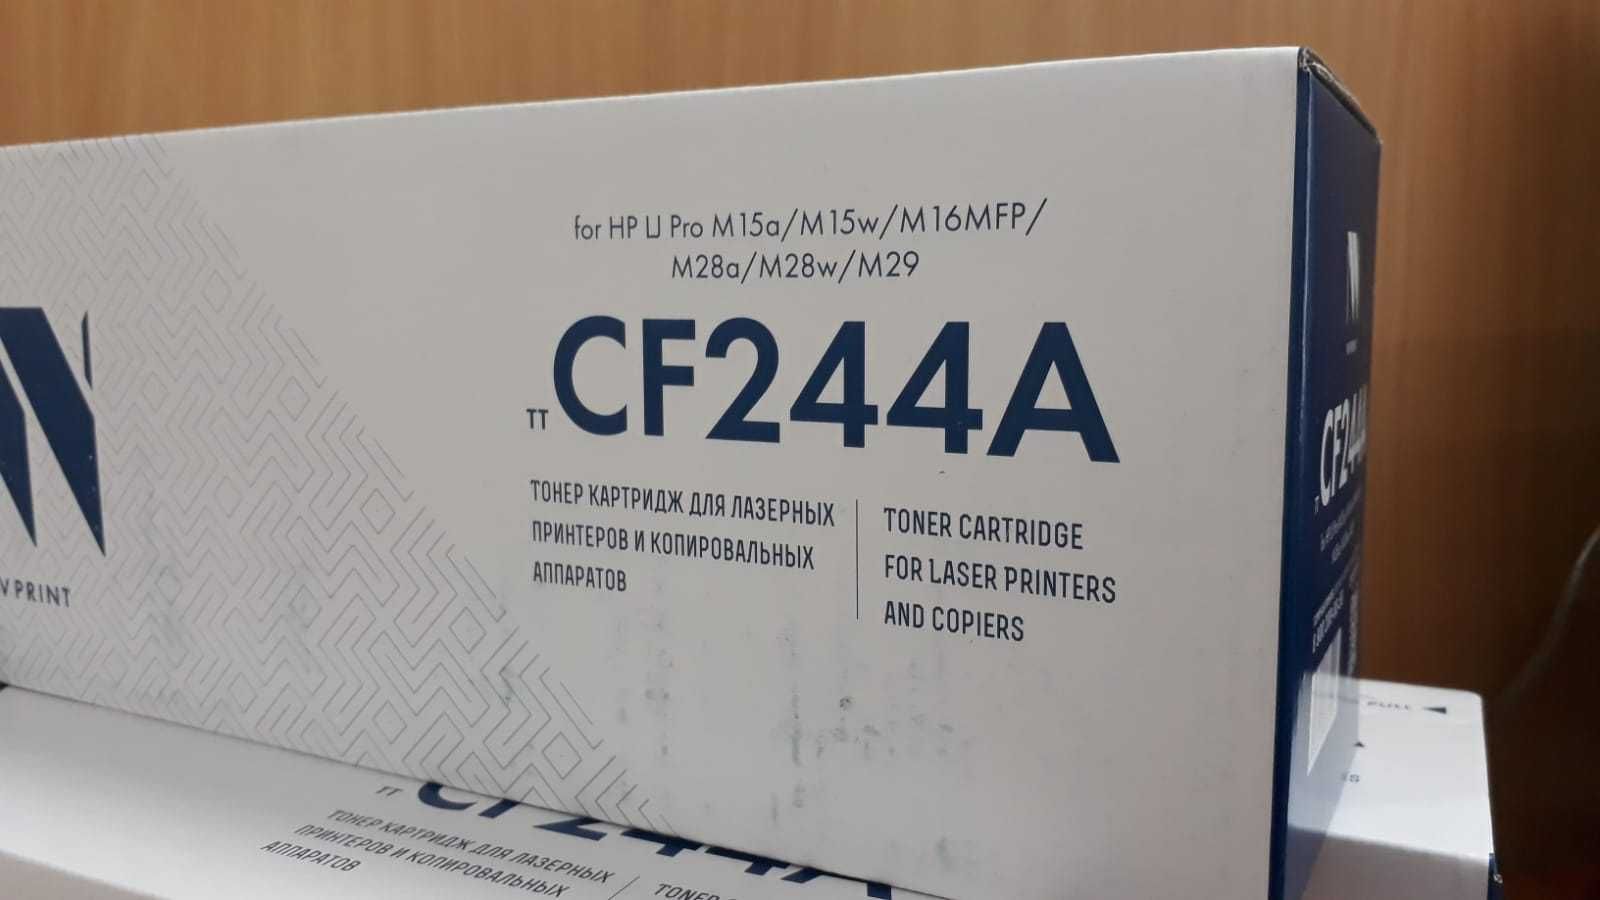 Тонер Картридж NV Print CF244A (1000стр) для лазерных принтеров HP